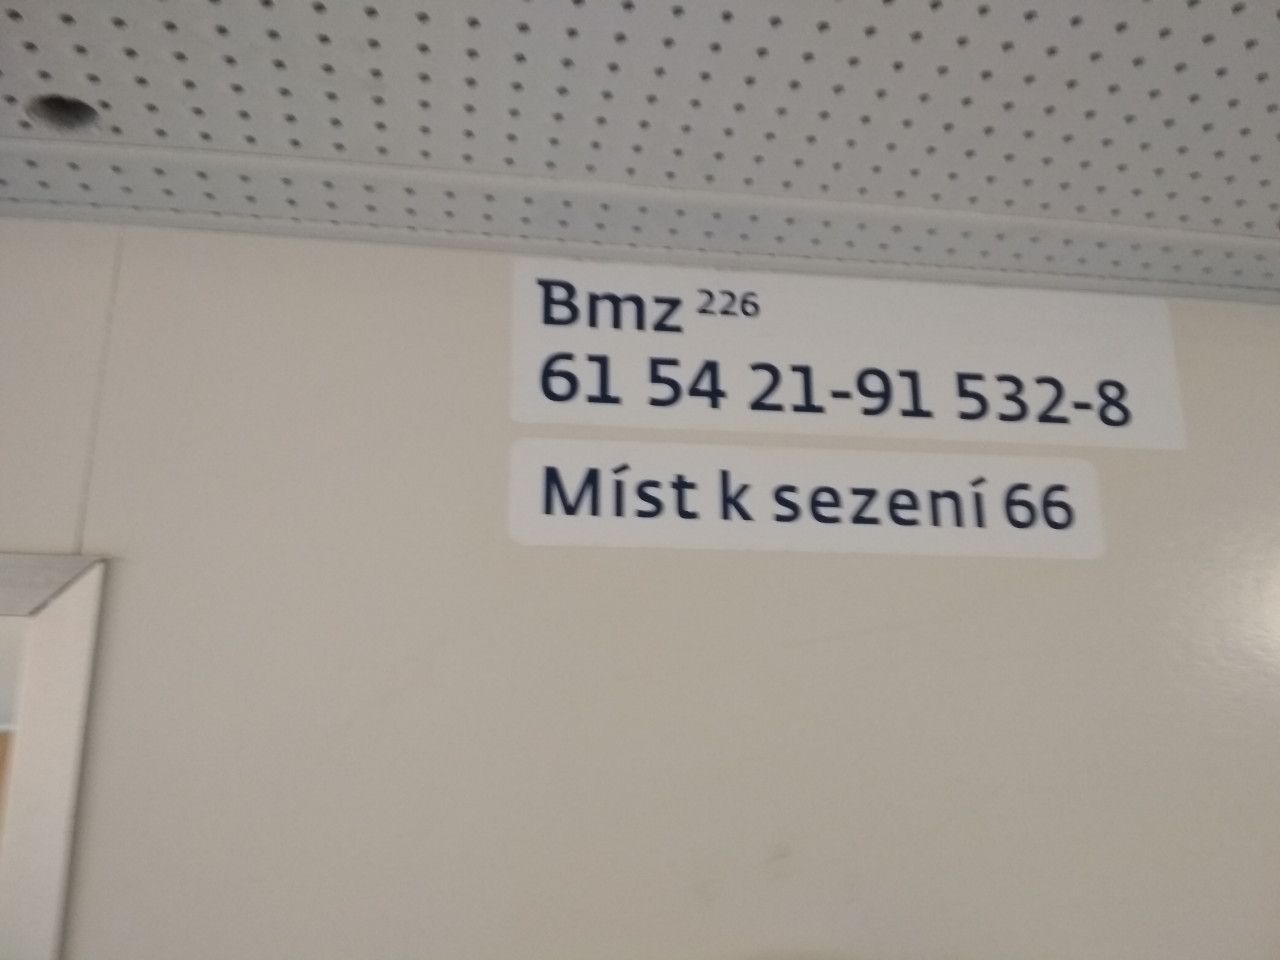 Bmz226 532